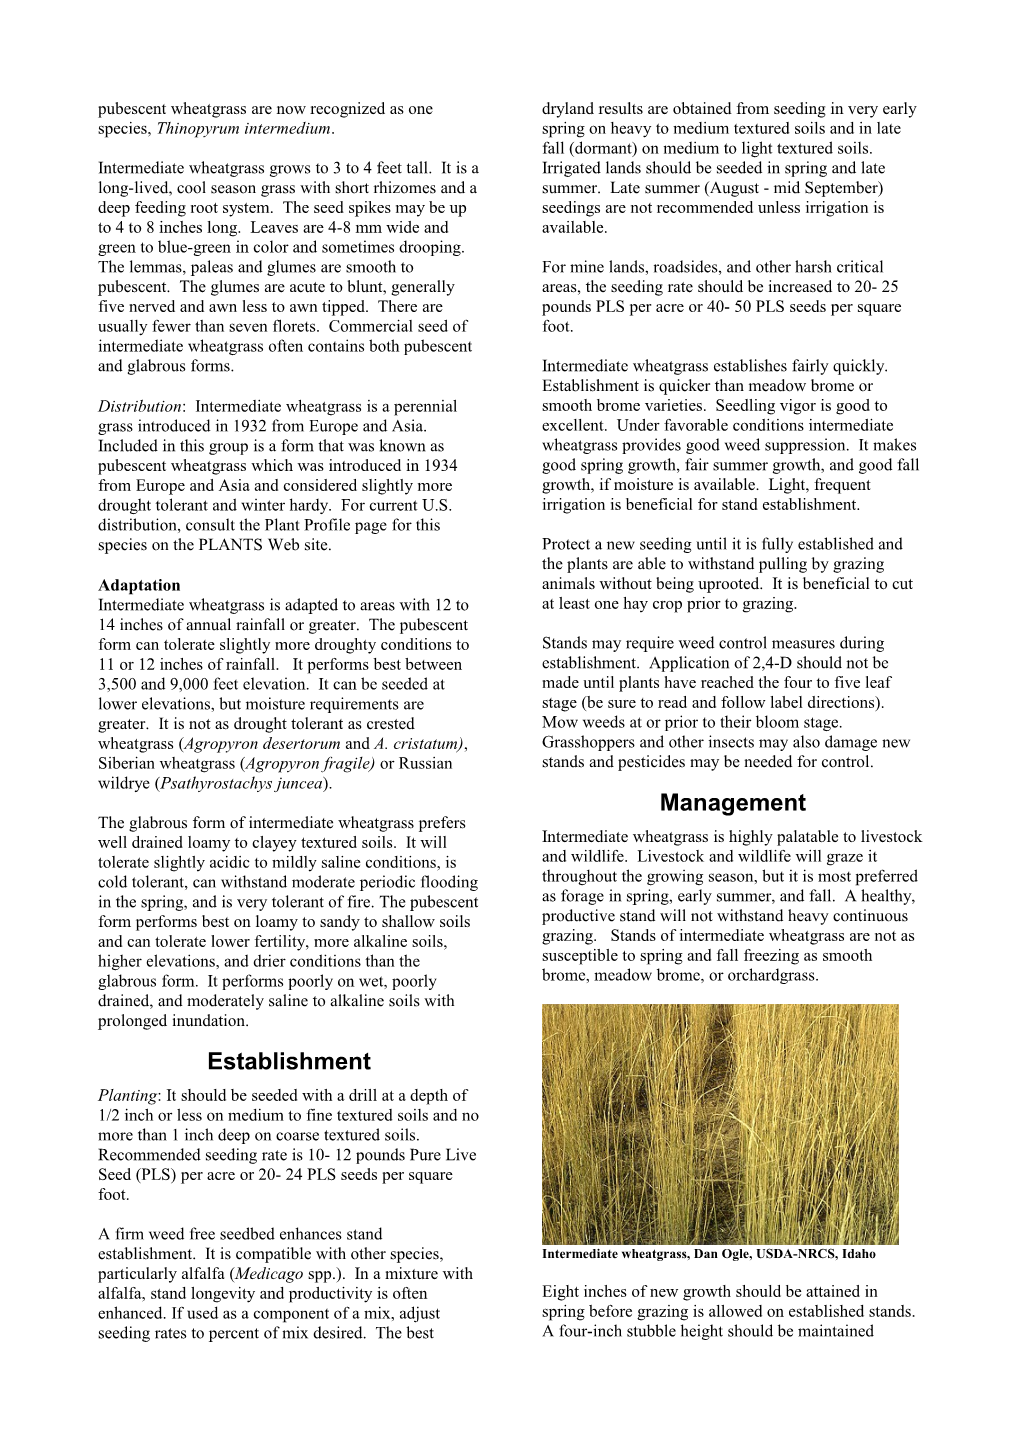 Plant Guide for Intermediate Wheatgrass (Thinopyrum Intermedium) s1